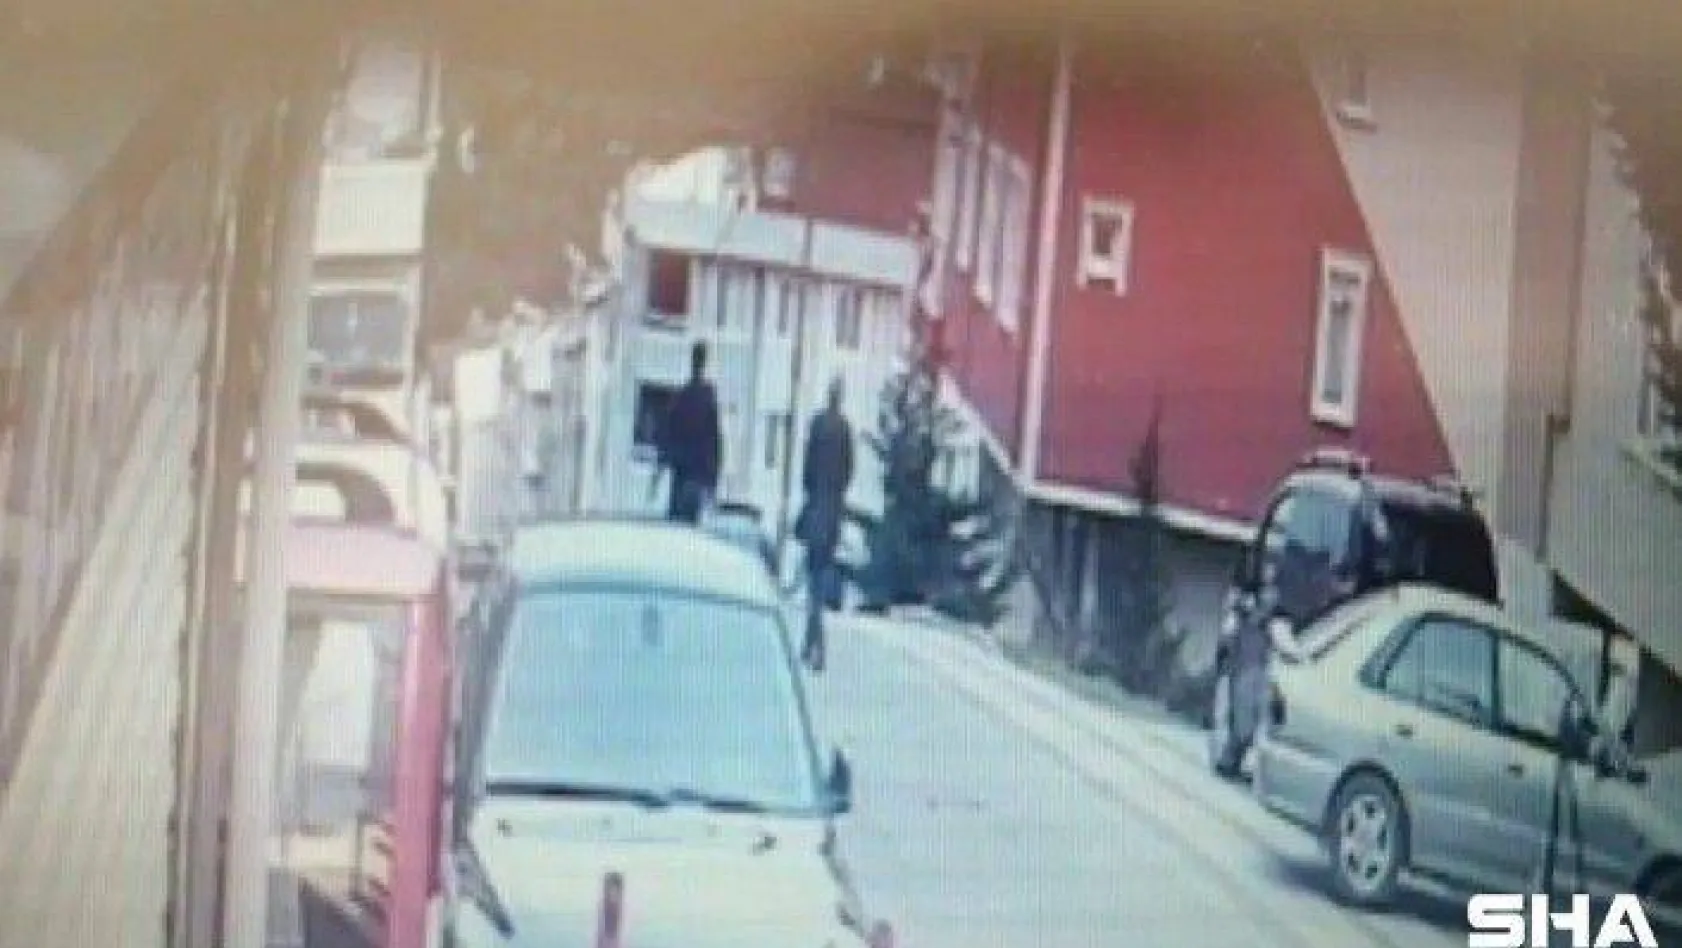 (Özel)- Kocaeli 'den takibe aldıkları elektronik eşya dolu kamyoneti Sancaktepe'de dakikalar içinde soydular